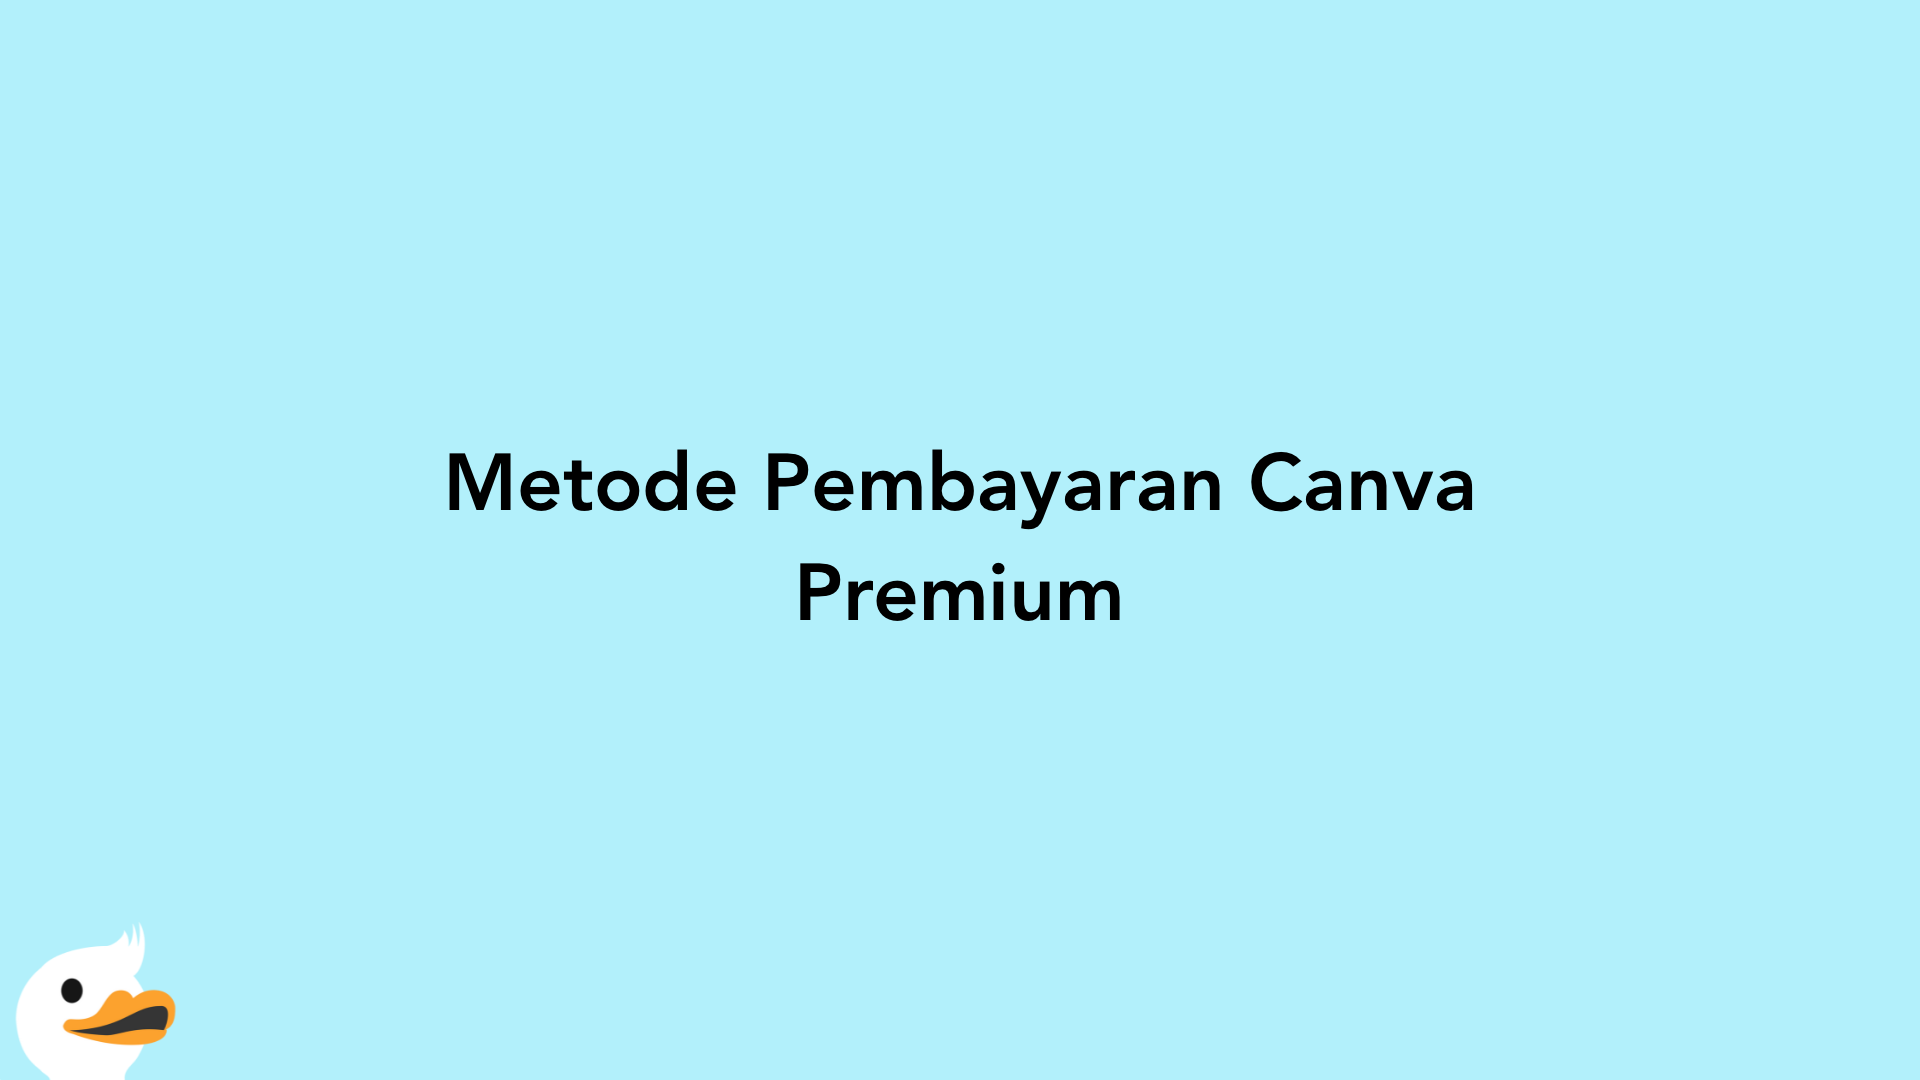 Metode Pembayaran Canva Premium